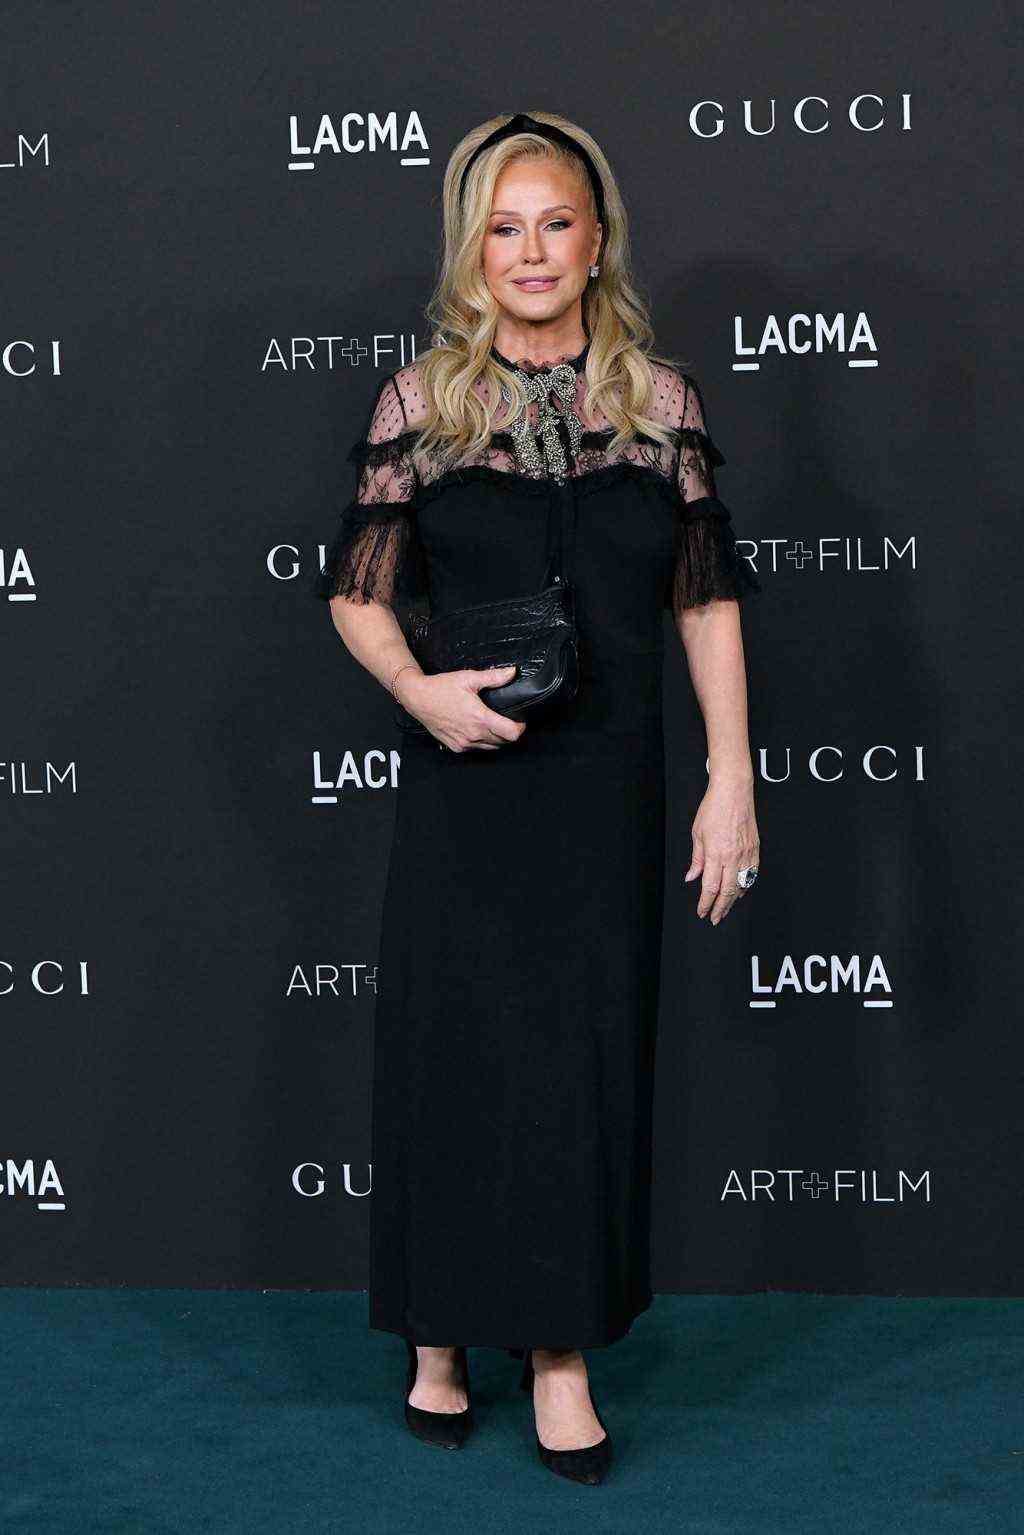 10. jährliche LACMA ART+FILM GALA präsentiert von Gucci